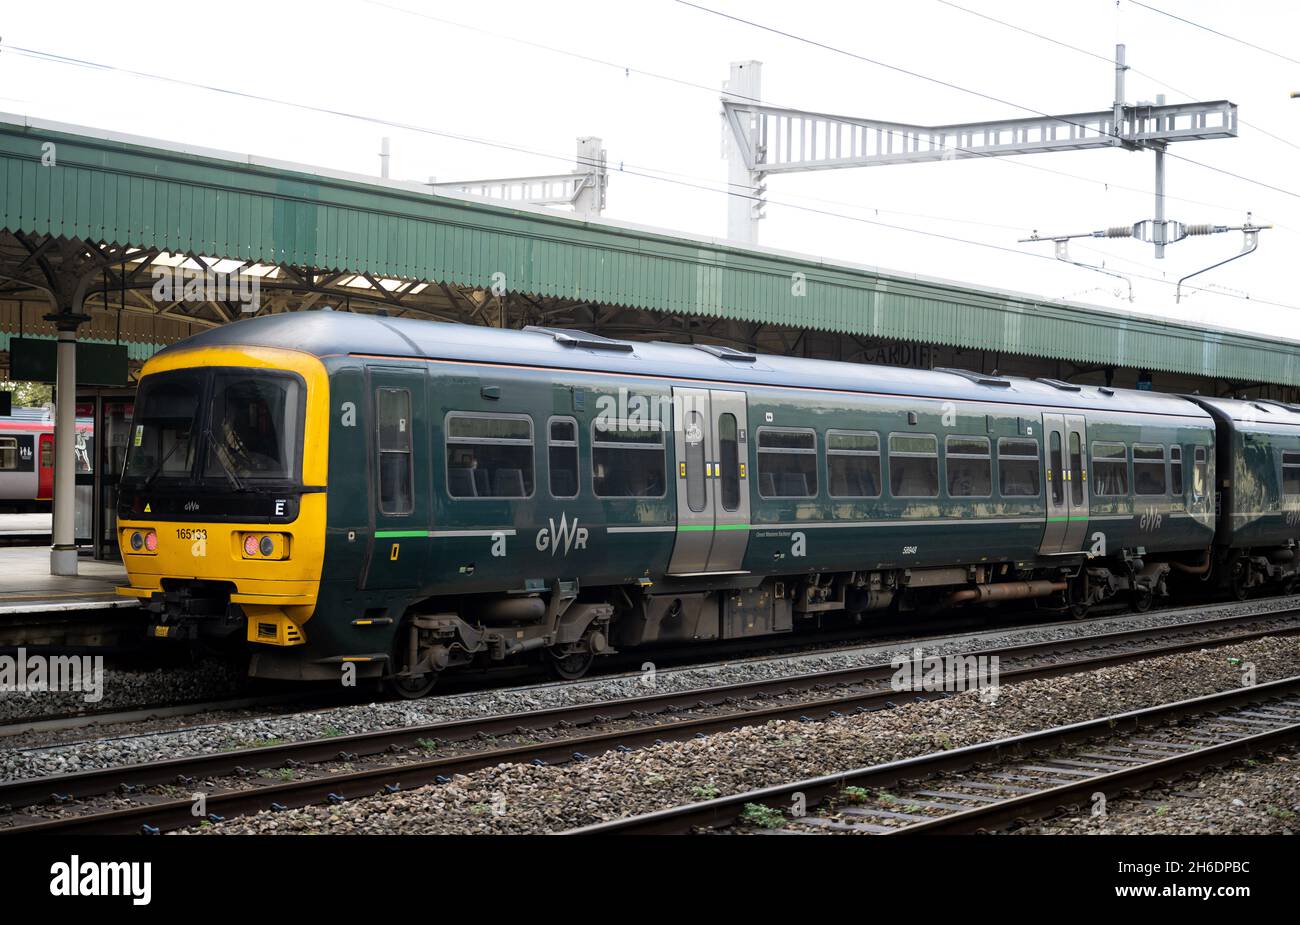 Un train GWR (Great Western Rail) à la gare centrale de Cardiff à Cardiff, pays de Galles, Royaume-Uni. Banque D'Images